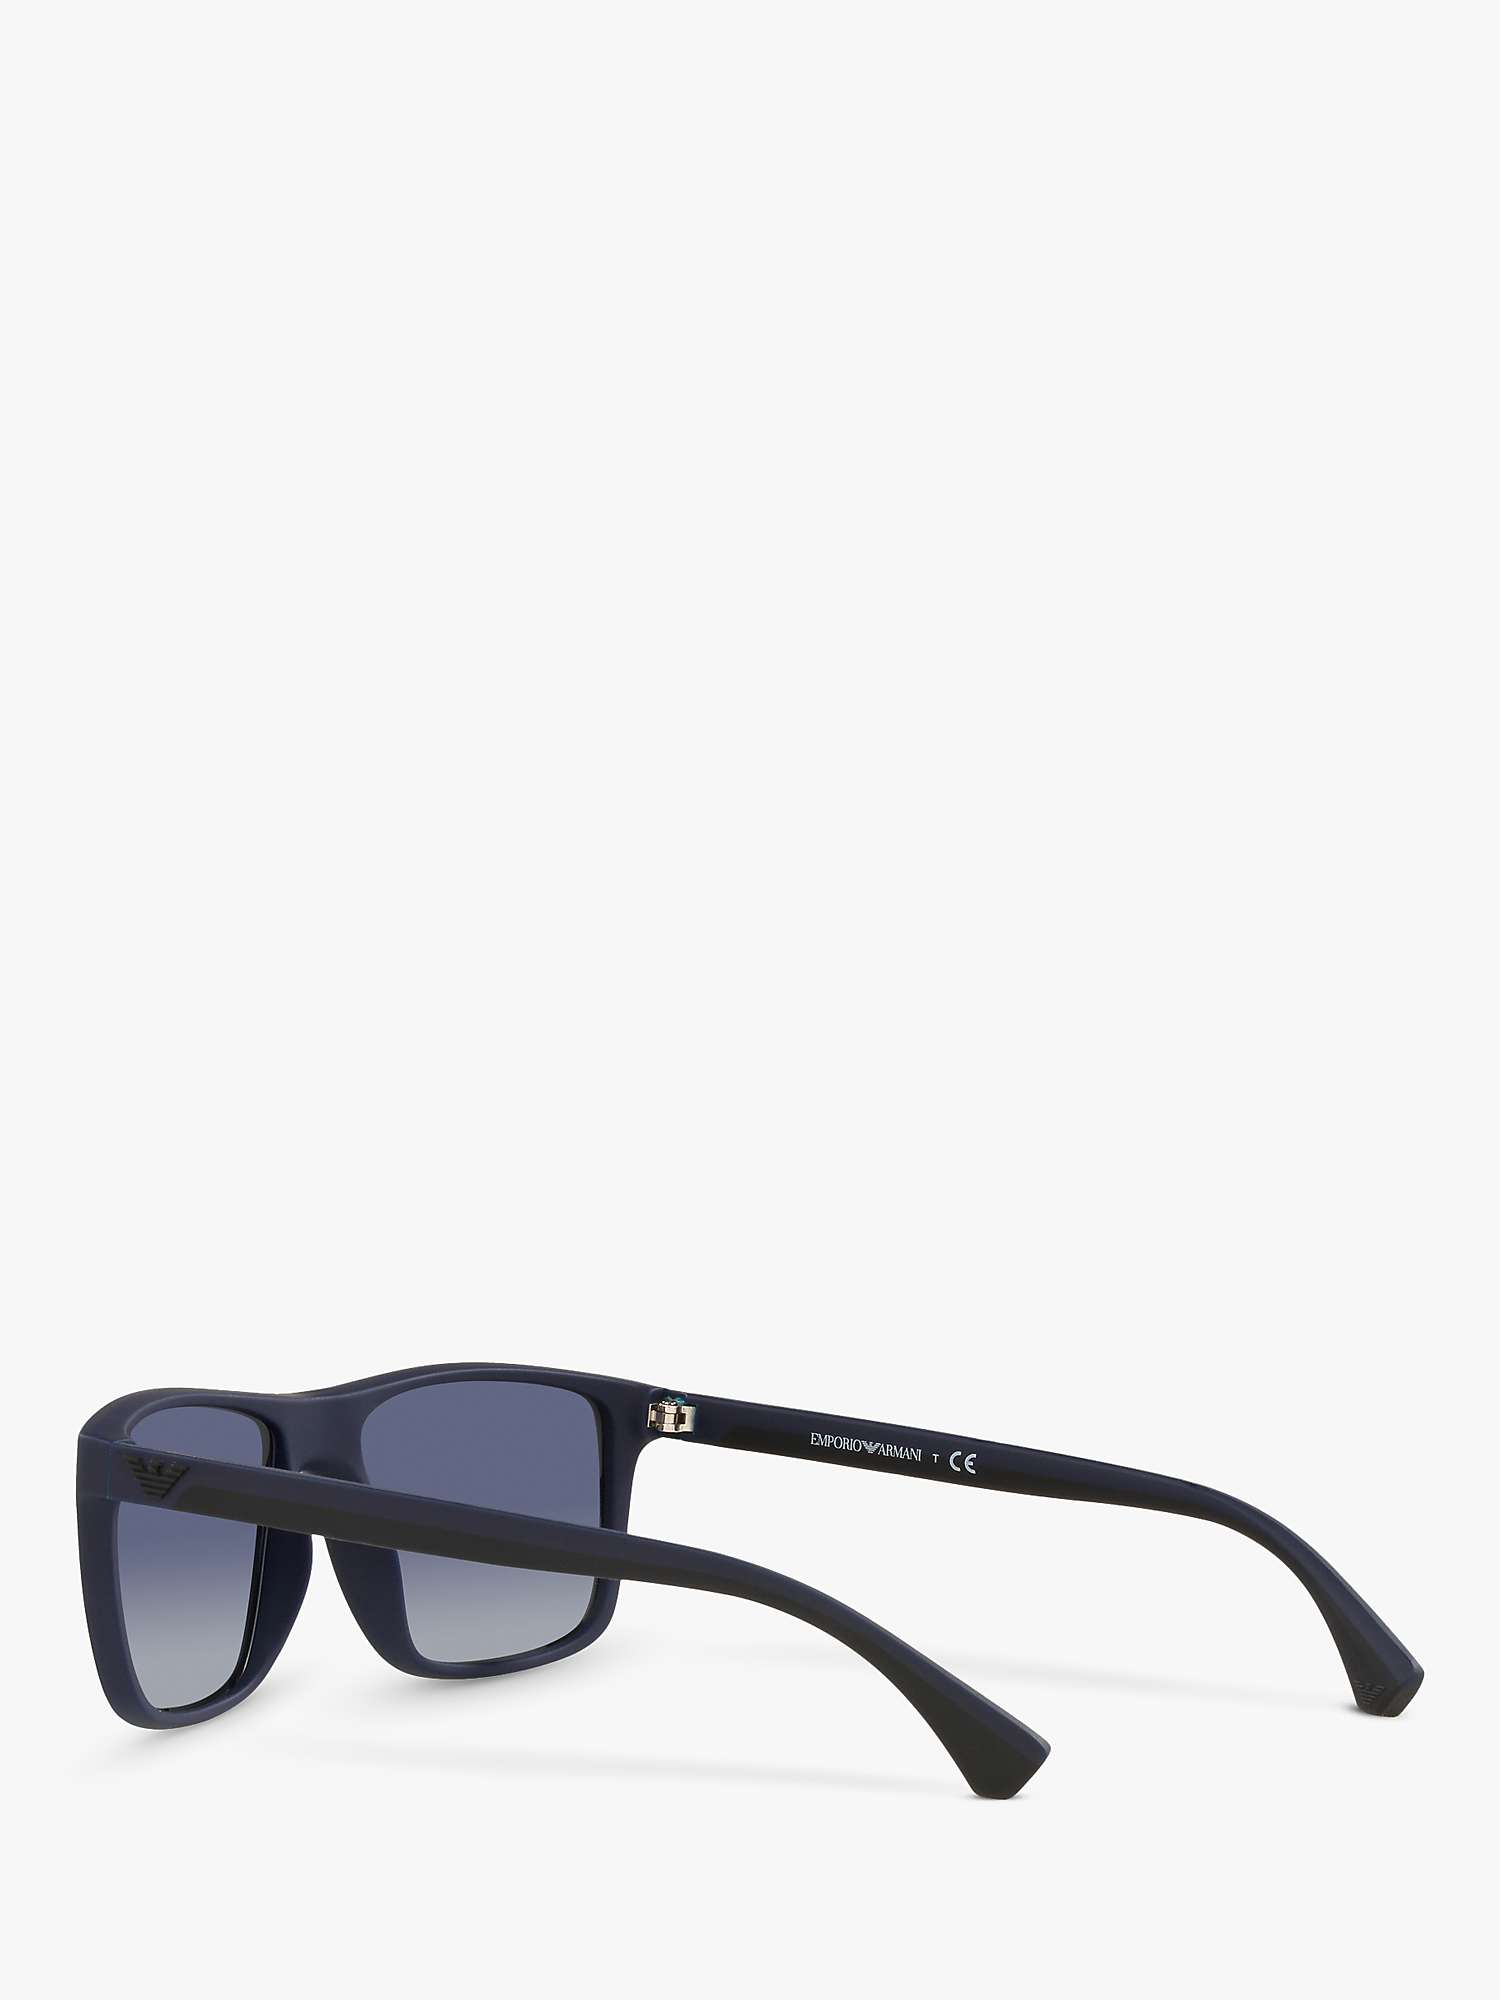 Buy Emporio Armani EA4033 Men's Square Sunglasses, Black/Blue Gradient Online at johnlewis.com